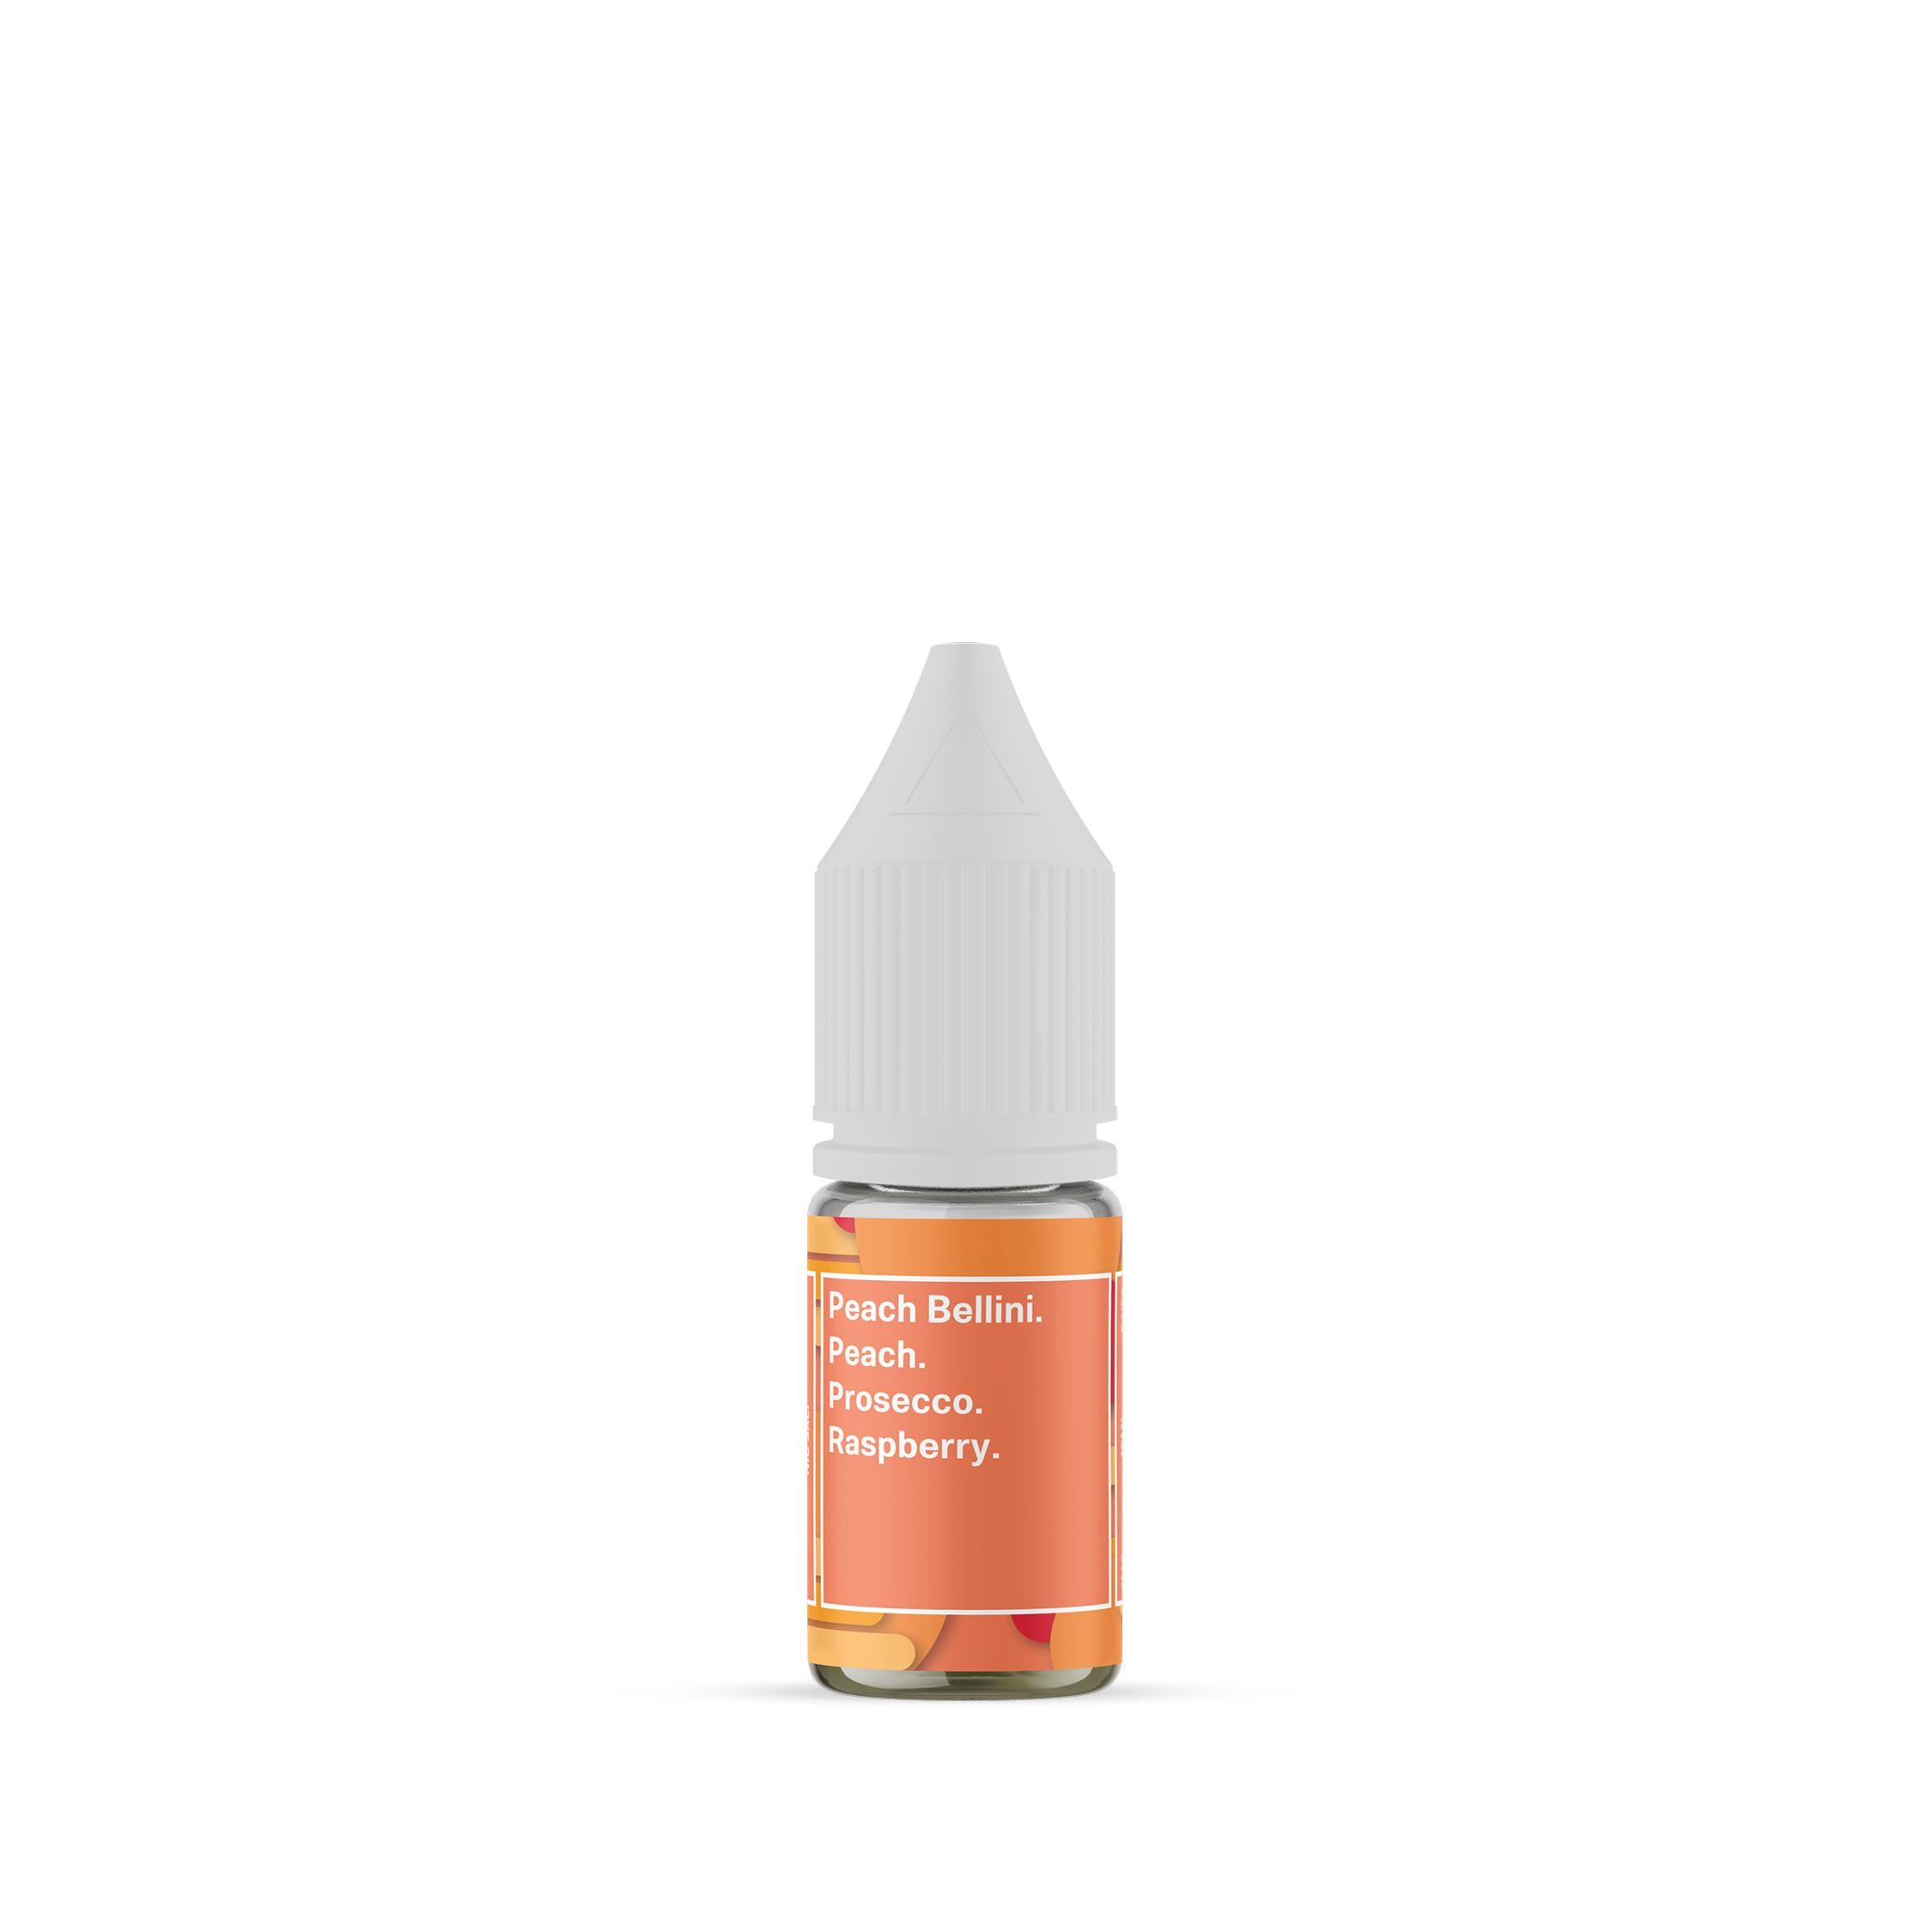 Peach Bellini Nic Salt by Supergood. - 10ml-Supergood.